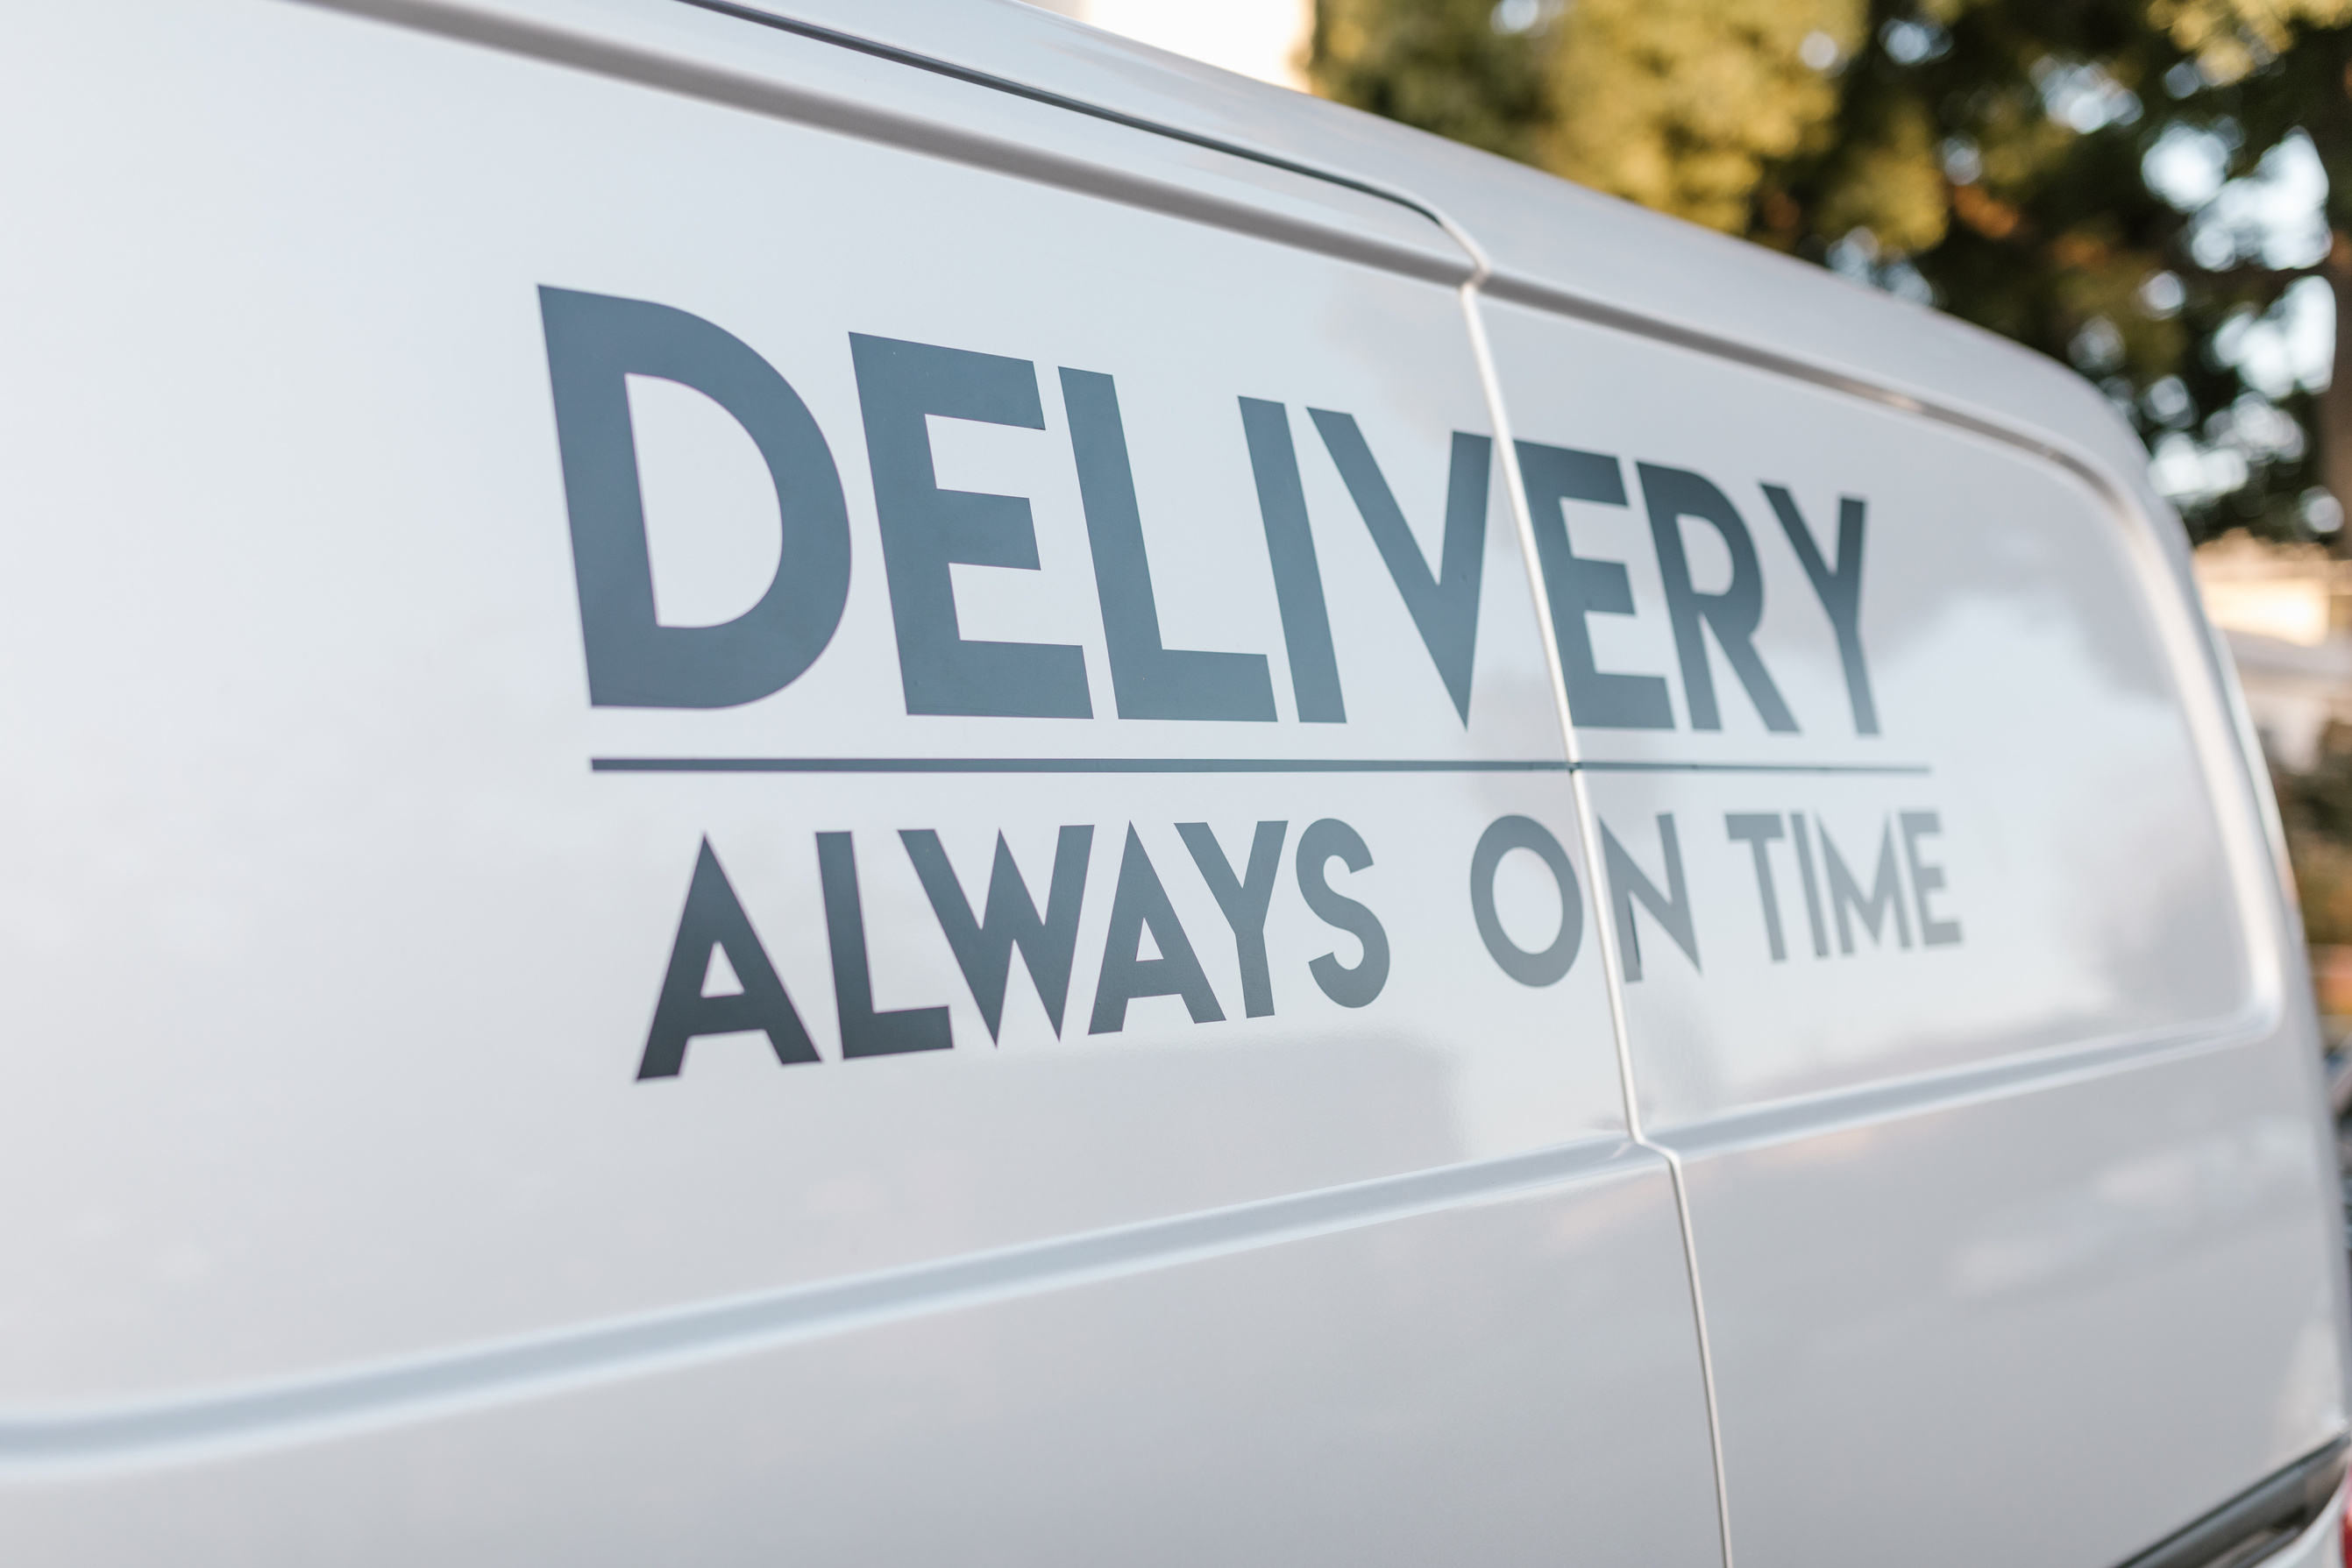 A Delivery Van Slogan